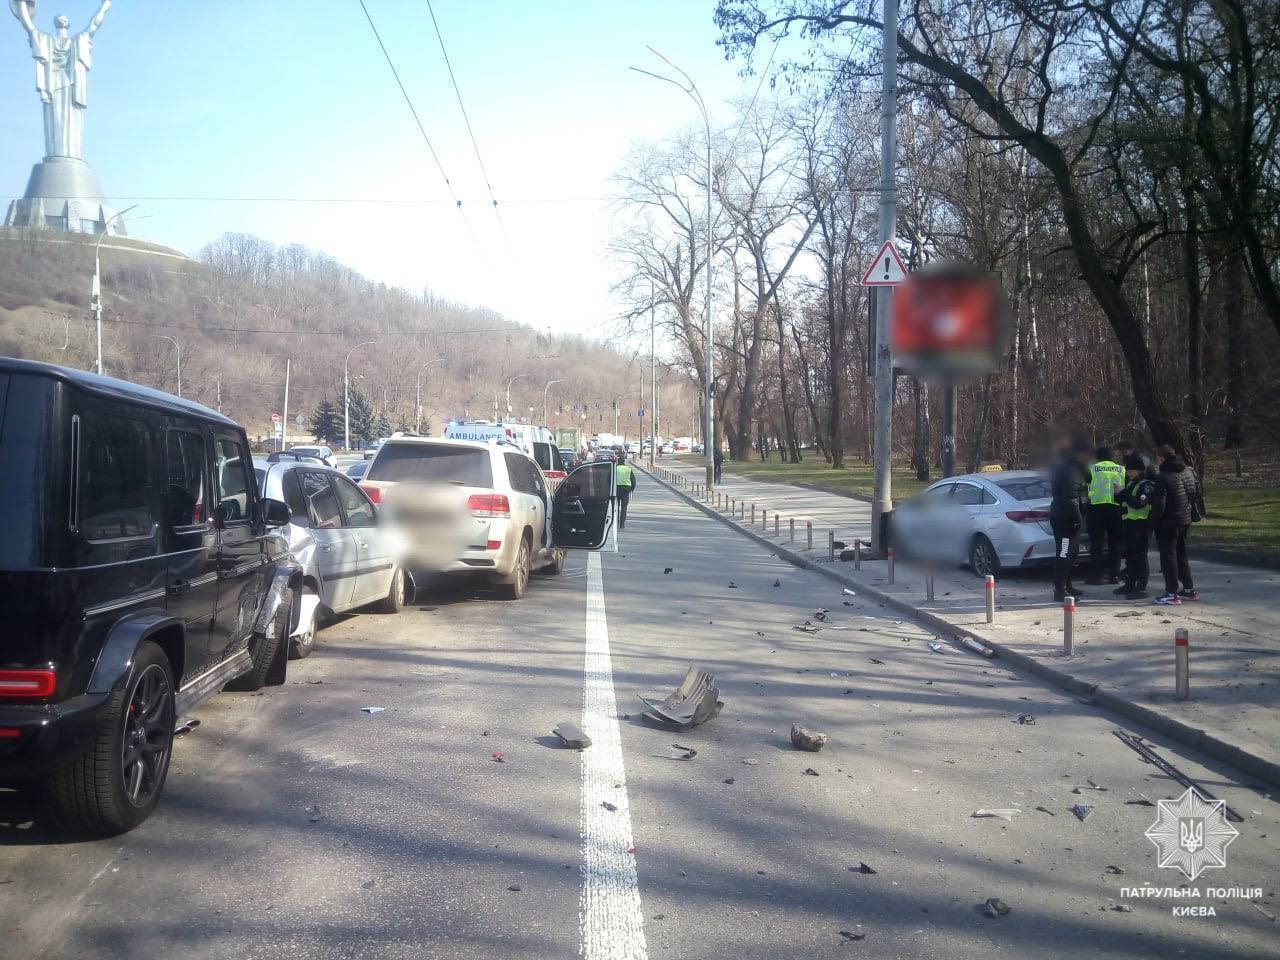 У Києві на Печерську сталась аварія за участі п’яти авто: одна з машин влетіла в стовп. Фото і відео